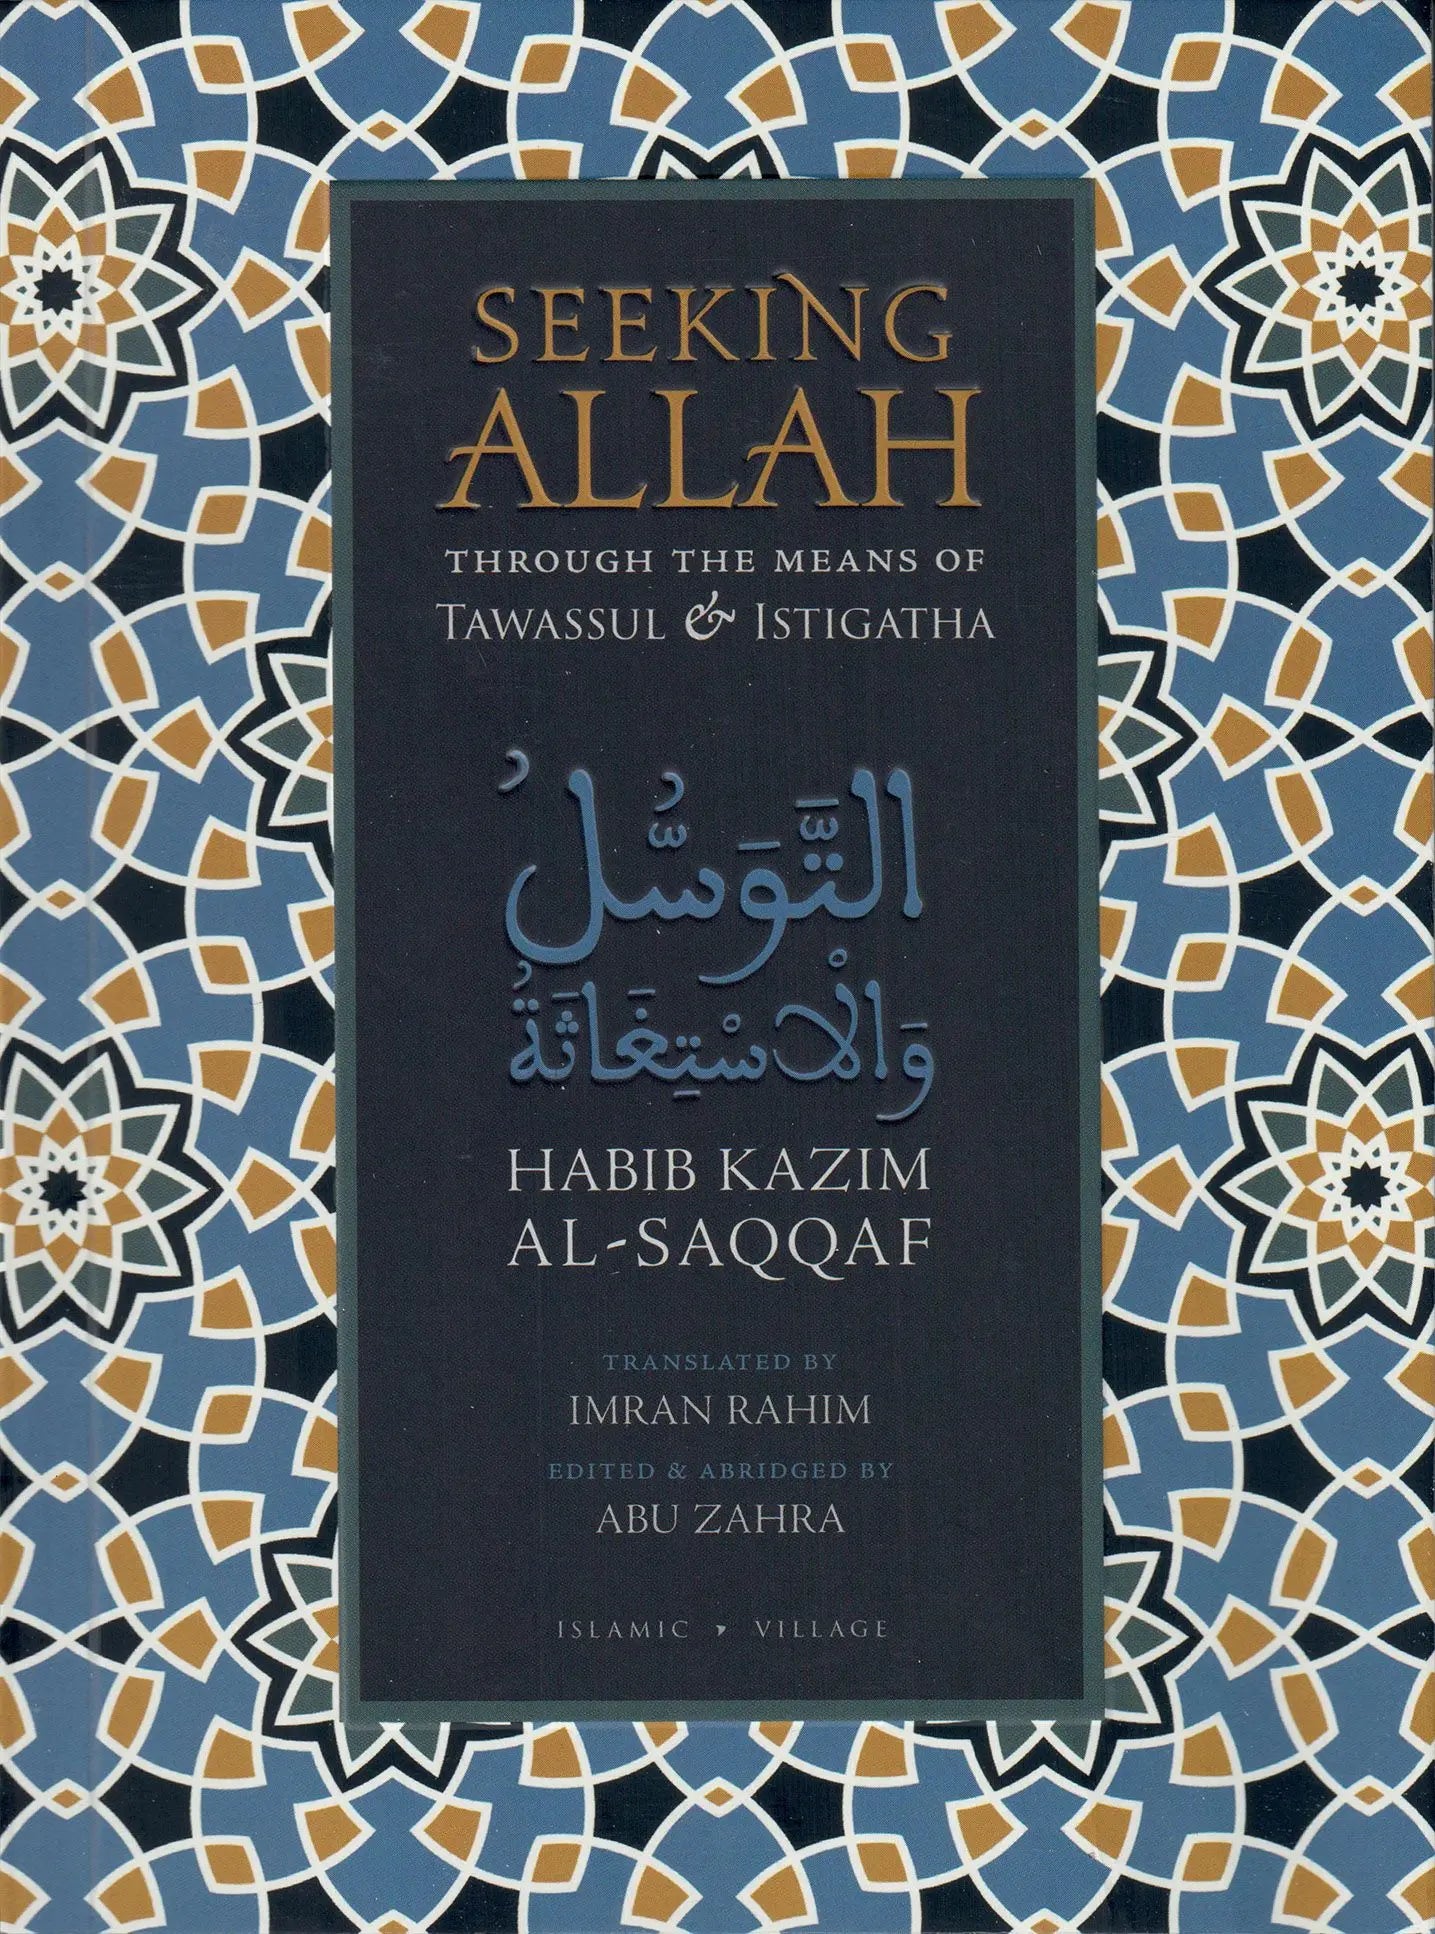 Seeking Allah Through the Means of Tawassul & Istigatha